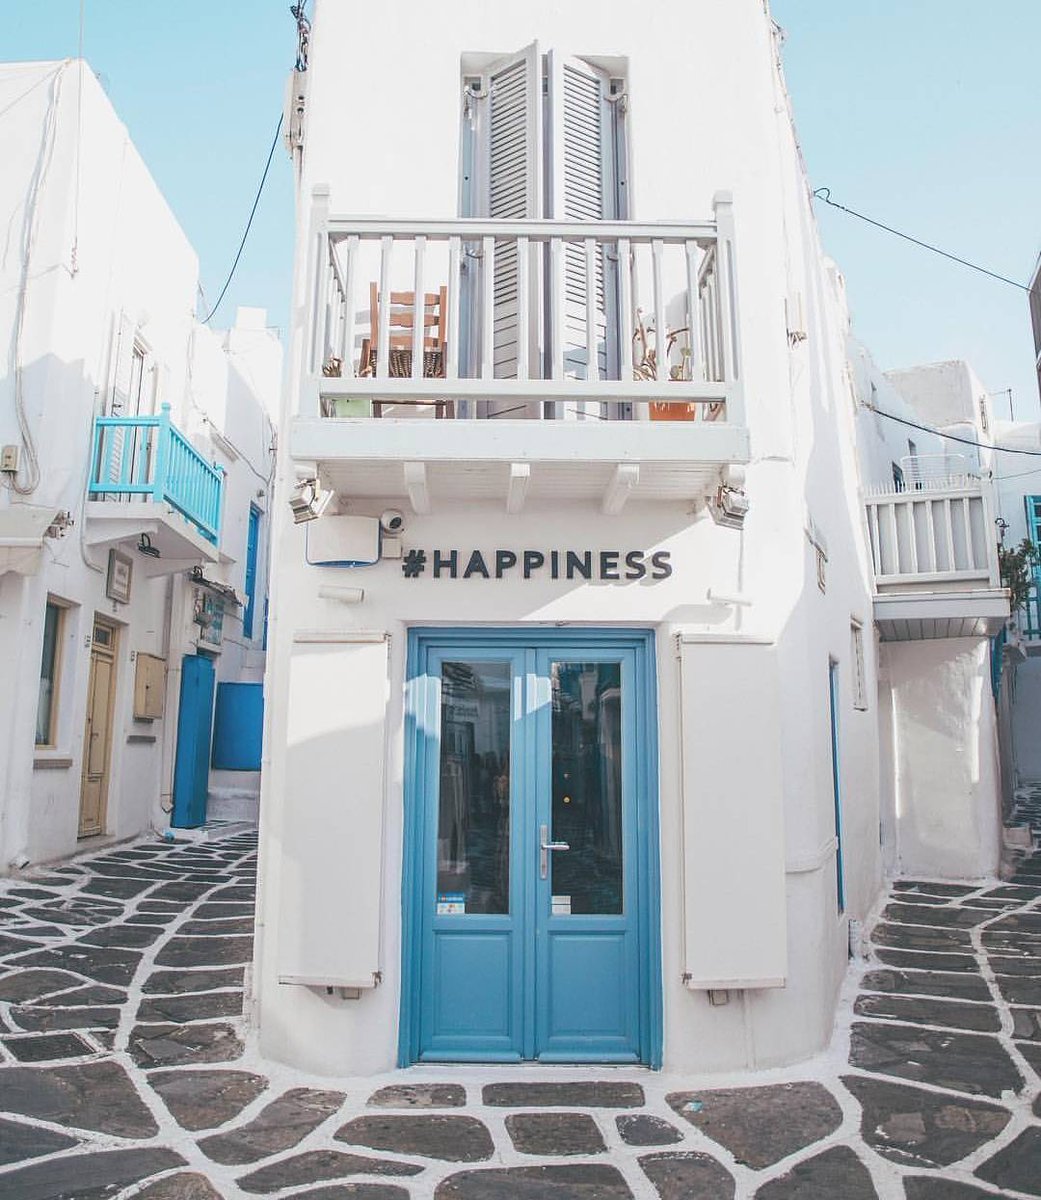 君に見せたい景色 On Twitter 白と水色の街並み ミコノス島 Place ギリシャ